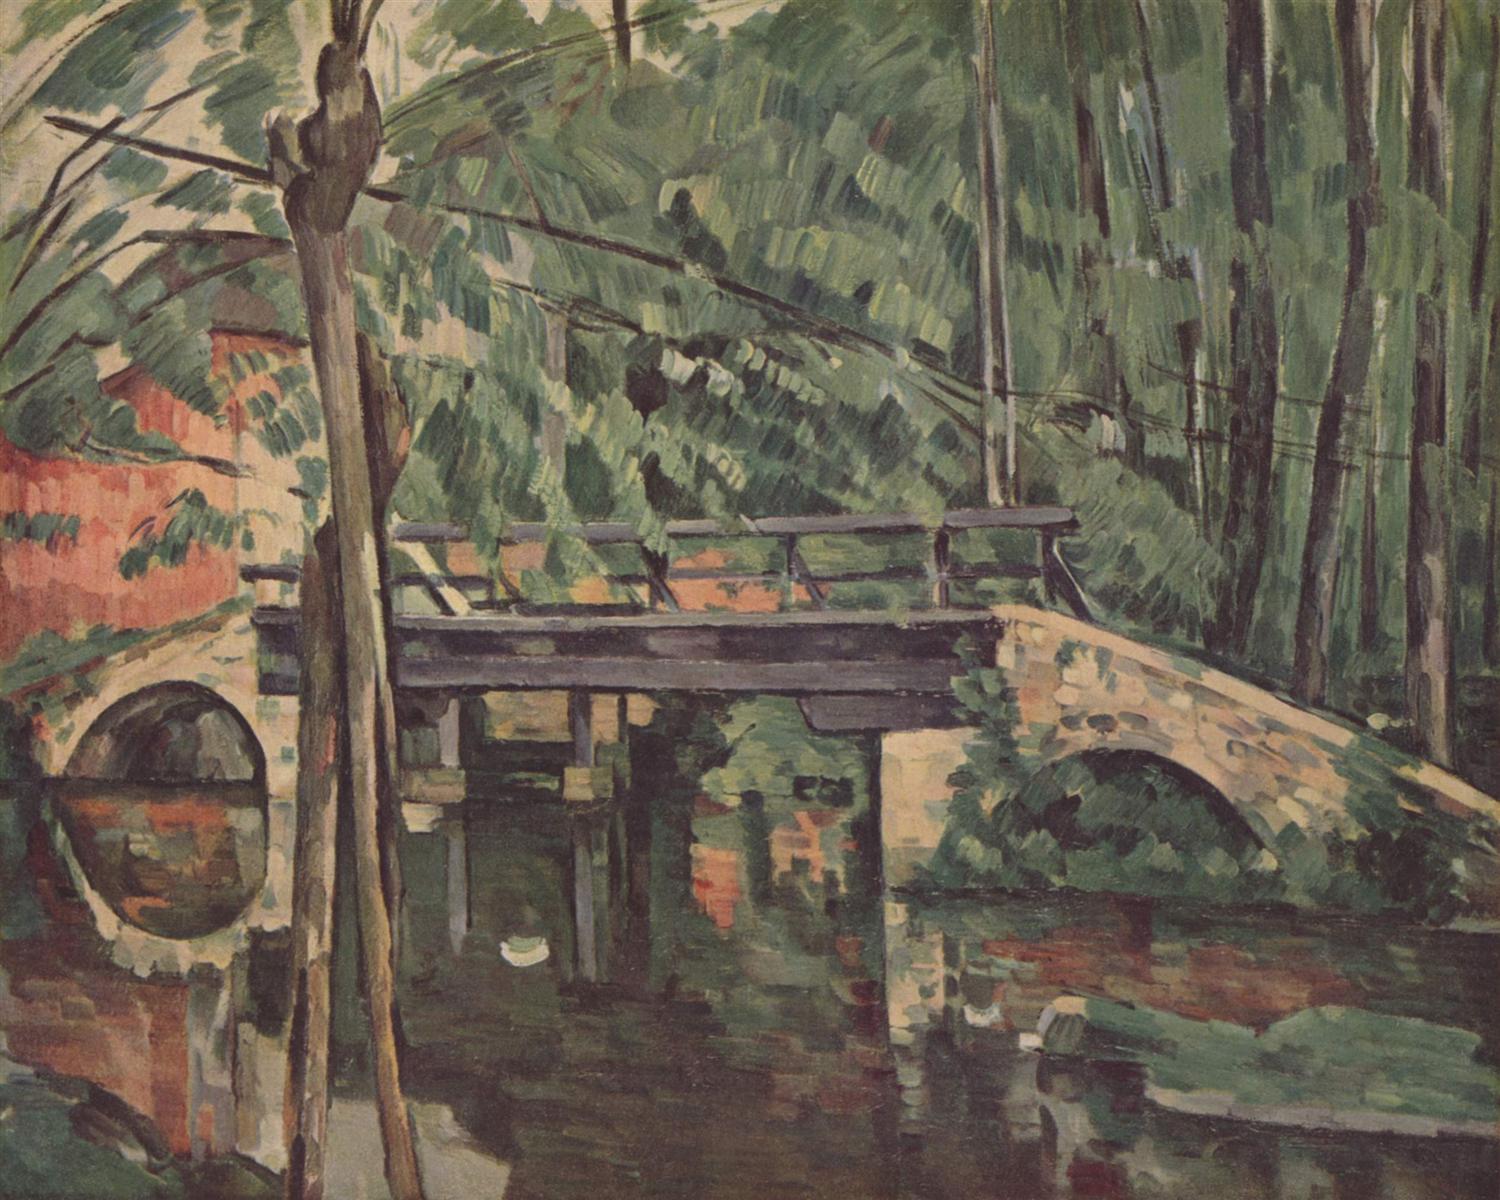 Paul Cezanne. The bridge at Maincy. 1879.